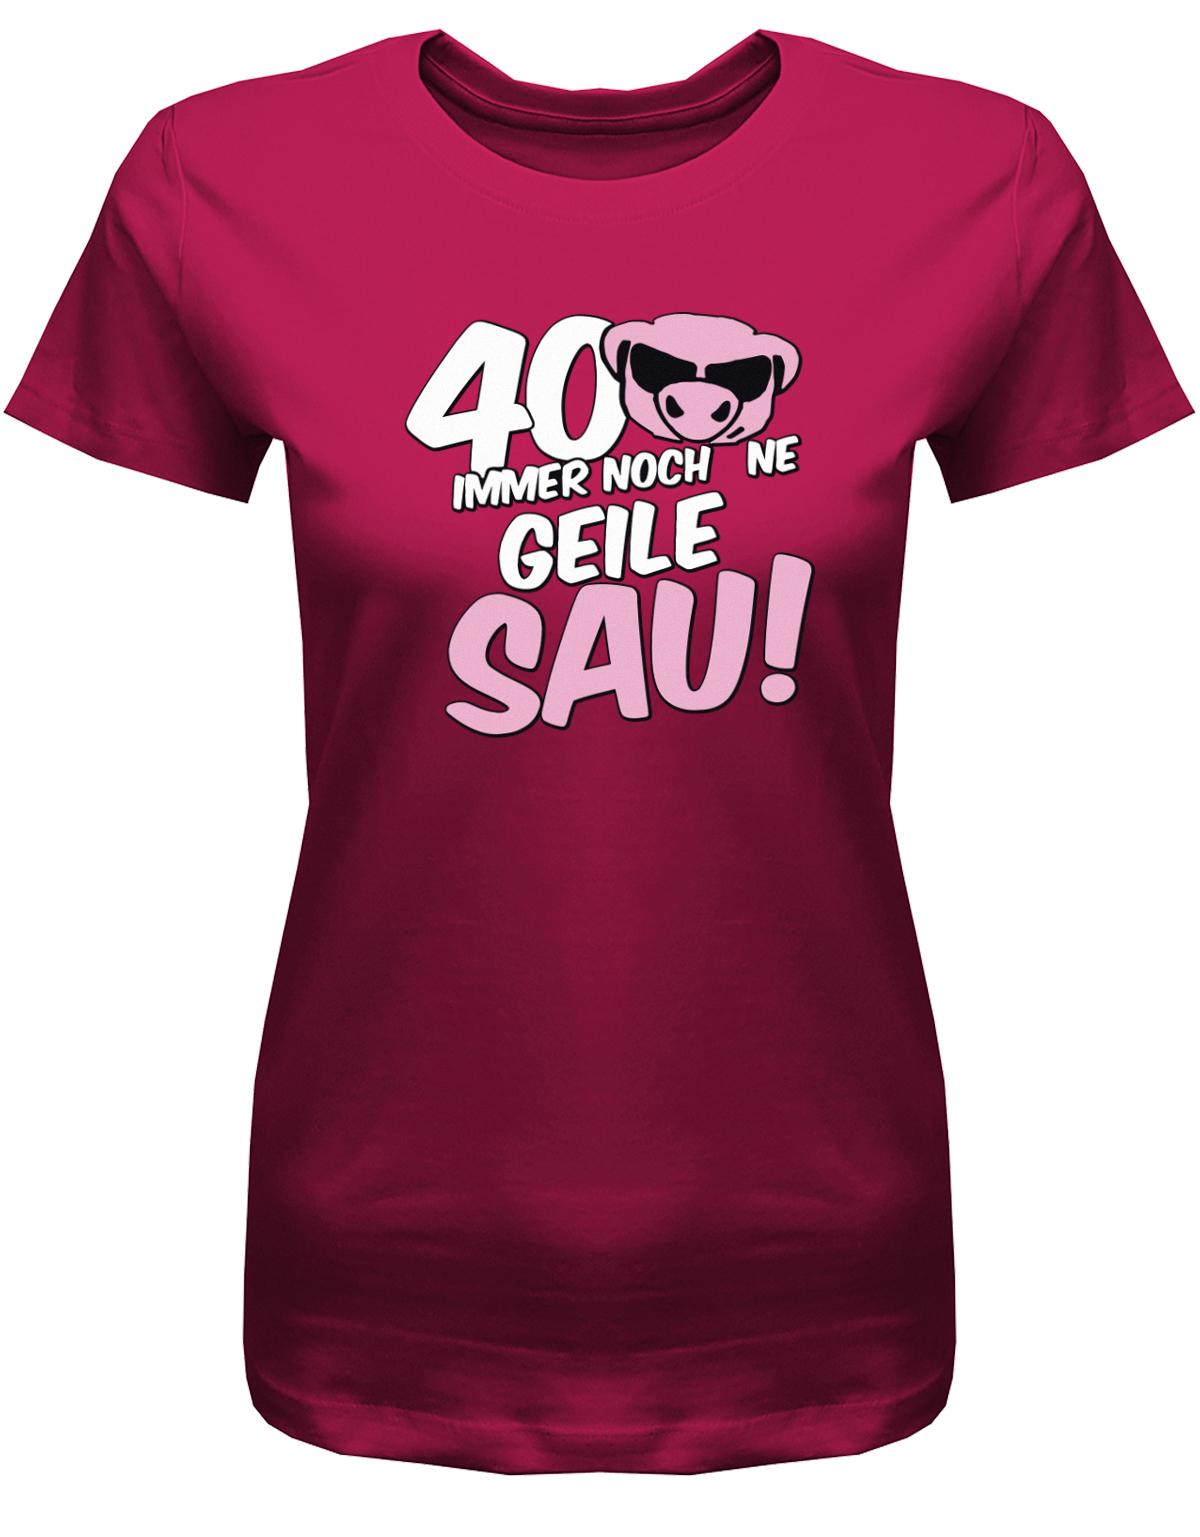 Lustiges T-Shirt zum 40 Geburtstag für die Frau Bedruckt mit 40 Immer noch 'ne geile Sau! Sau mit Sonnenbrille Sorbet